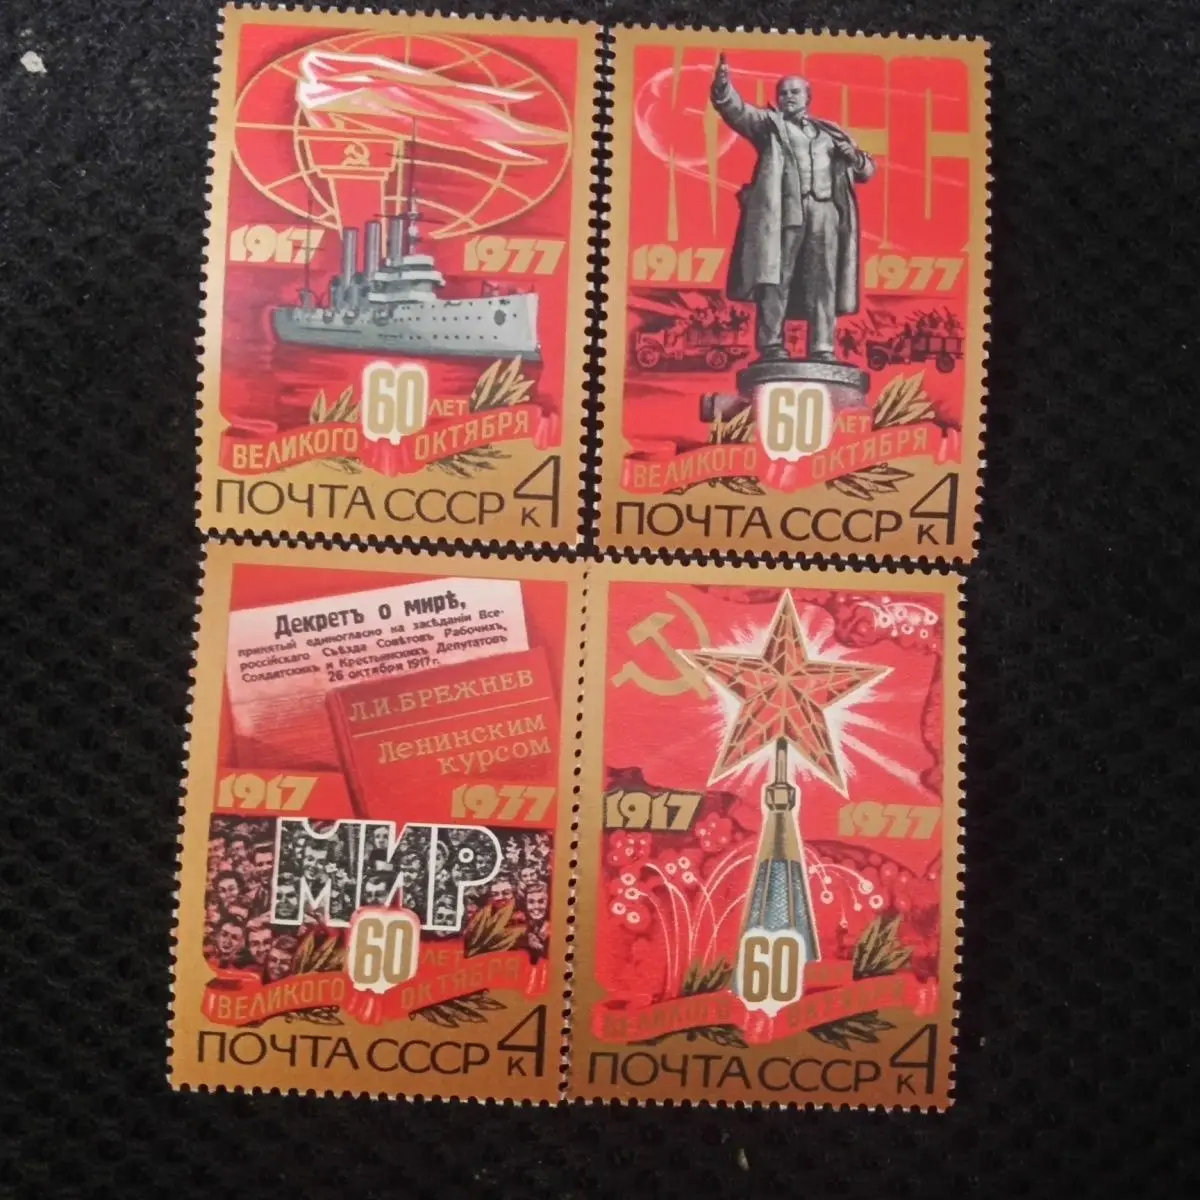 

Советские штампы СССР 1977, памятные штампы 60-летия победы Октябрьской революции